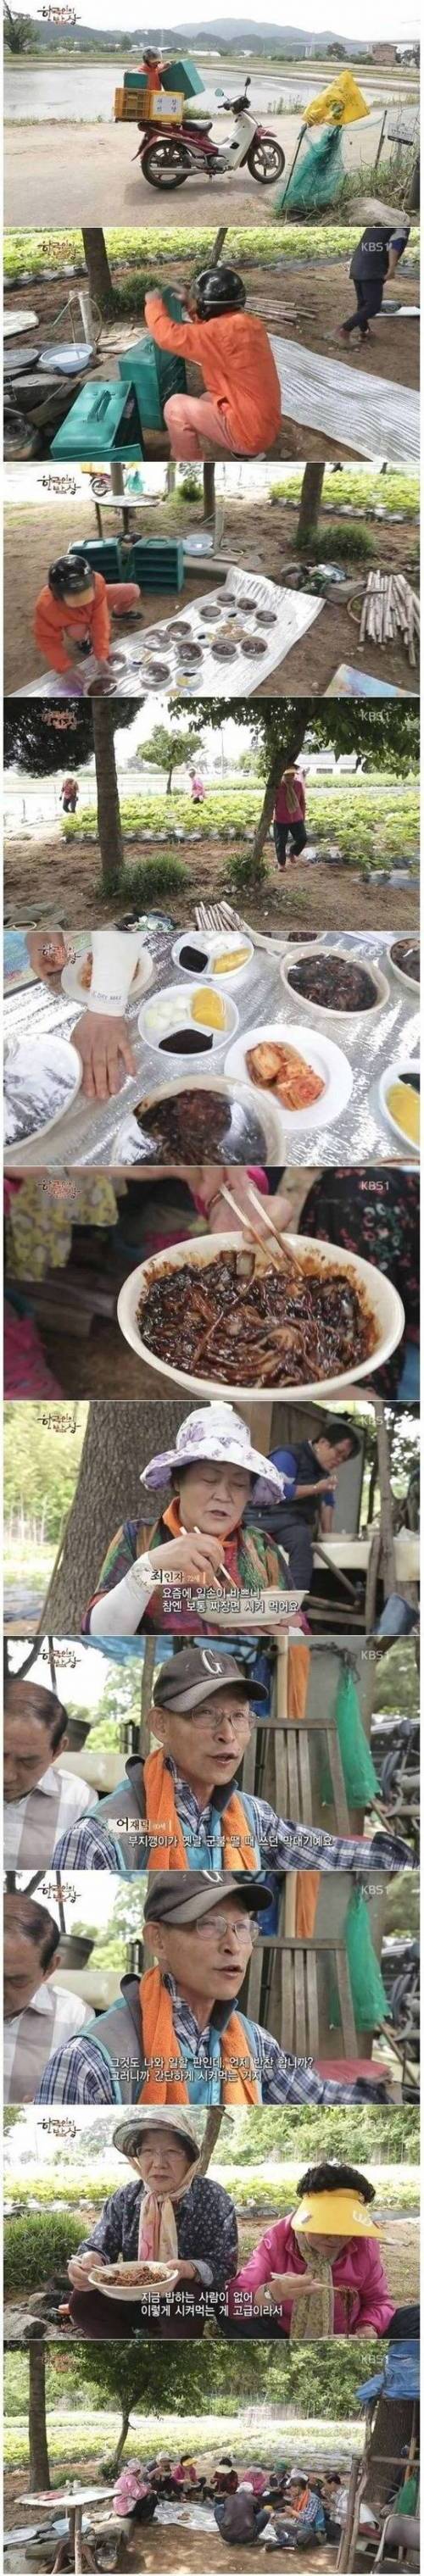 한국인의 밥상 - 농촌 새참